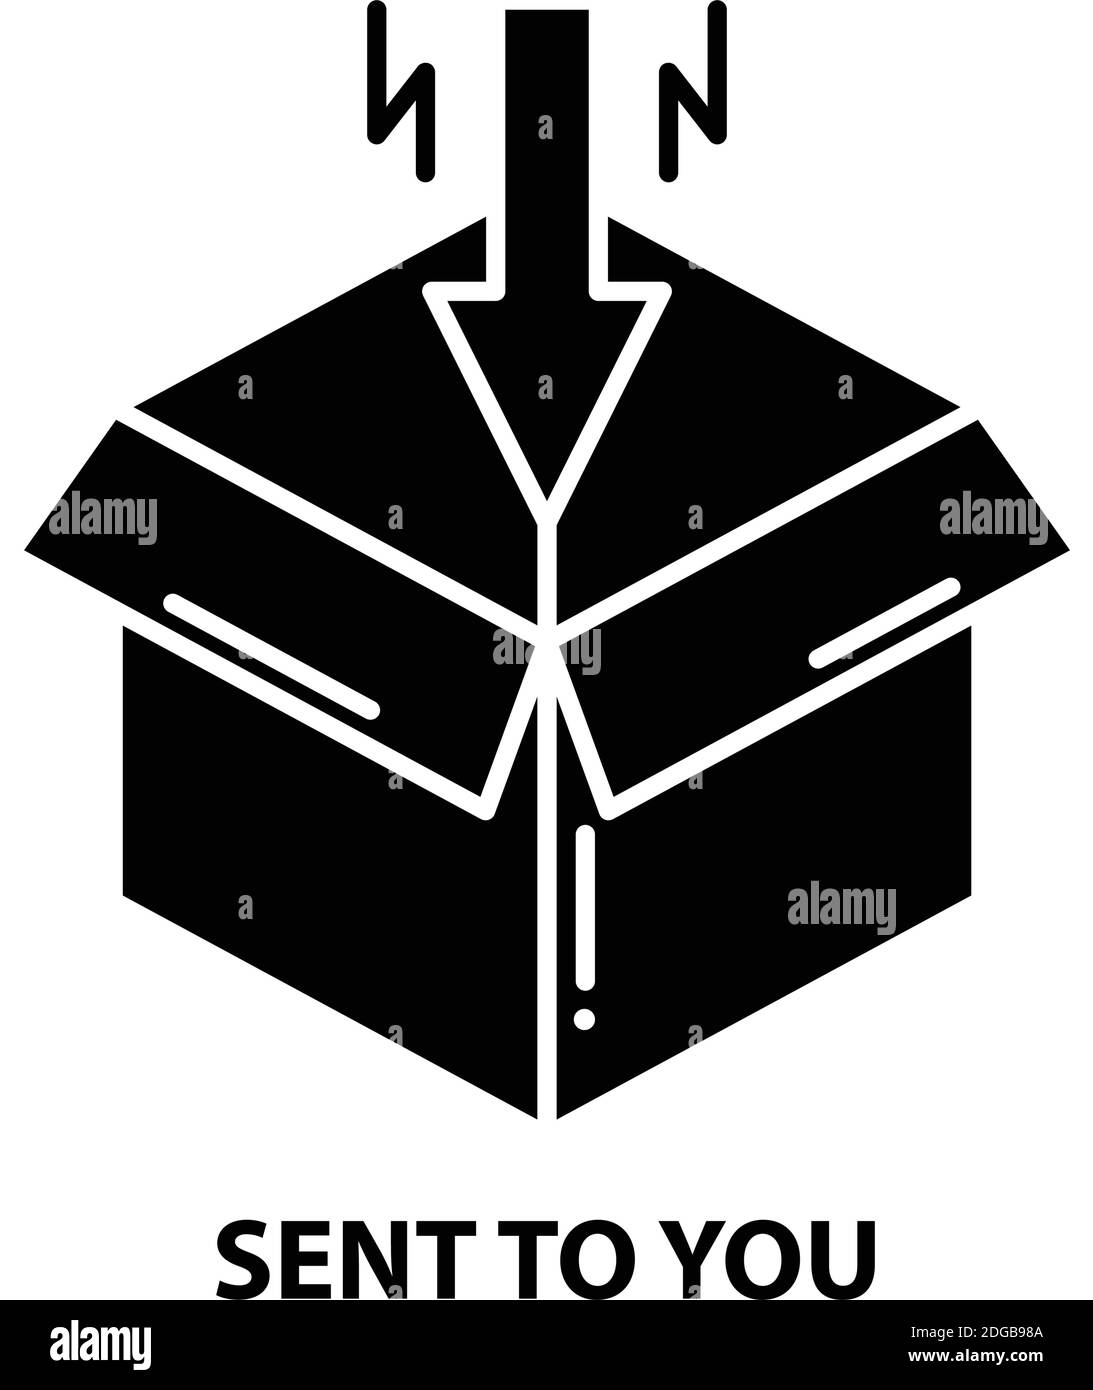 icona inviata, segno vettoriale nero con tratti modificabili, illustrazione del concetto Illustrazione Vettoriale